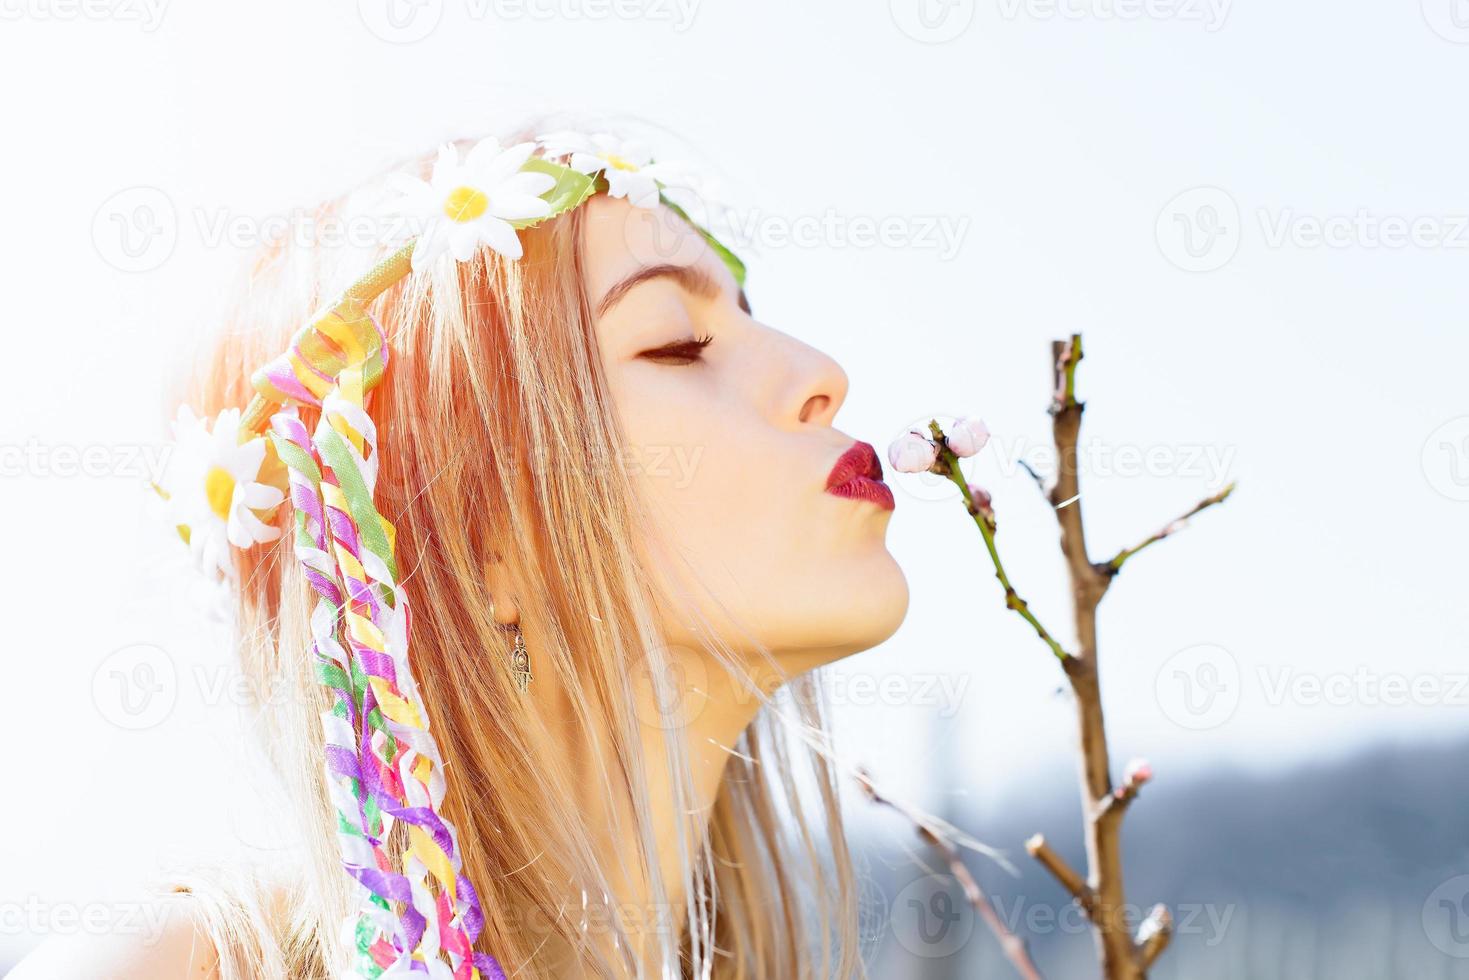 kus een bloemknop foto